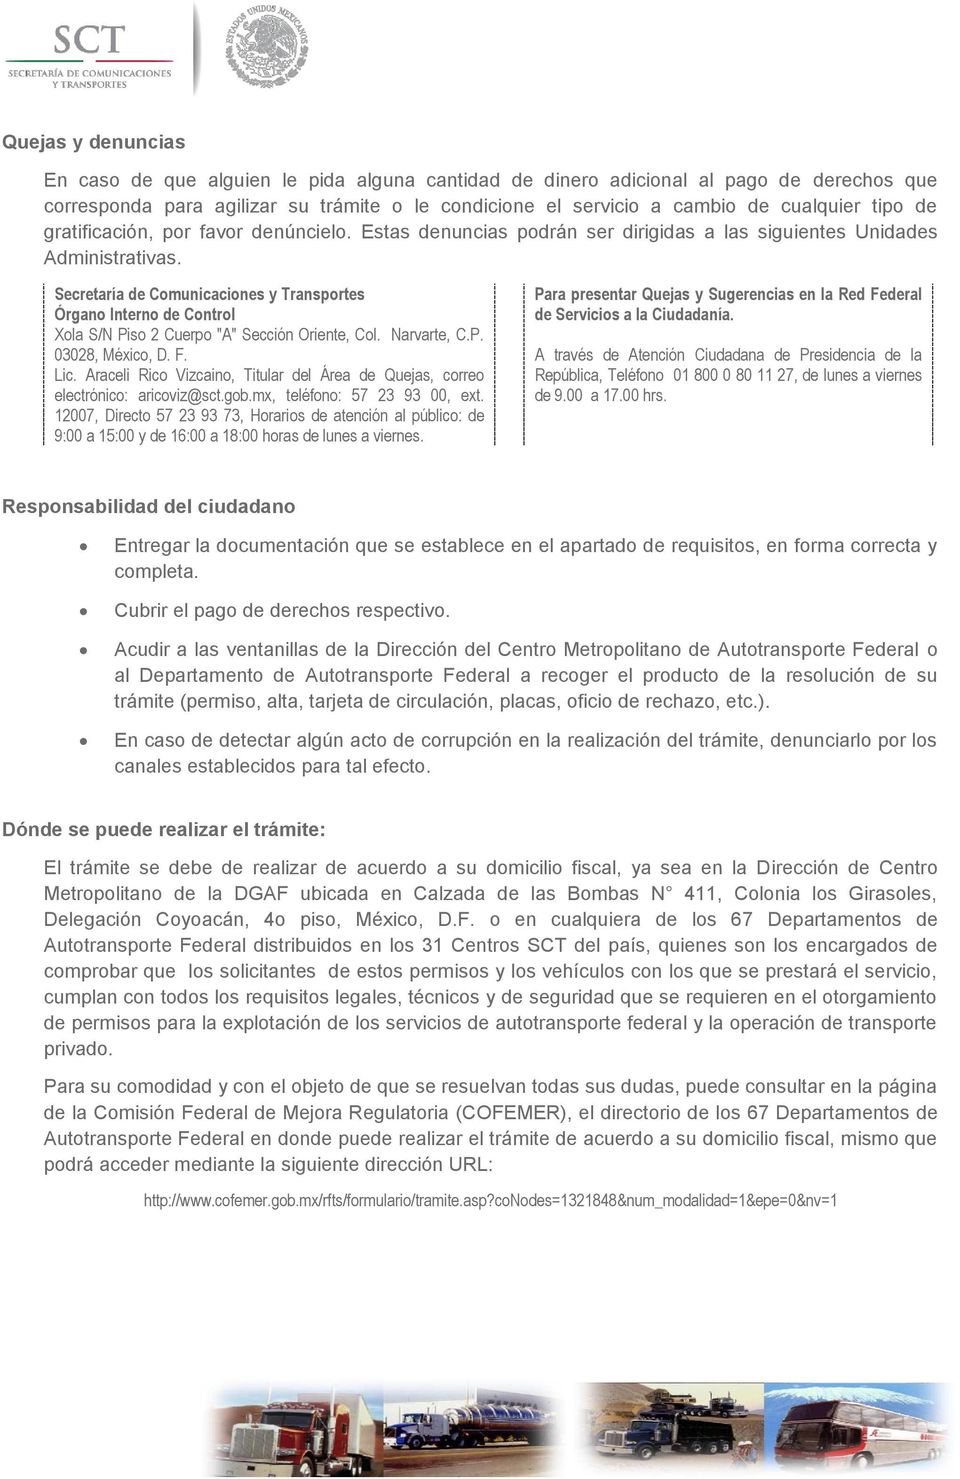 Secretaría de Comunicaciones y Transportes Órgano Interno de Control Xola S/N Piso 2 Cuerpo "A" Sección Oriente, Col. Narvarte, C.P. 03028, México, D. F. Lic.